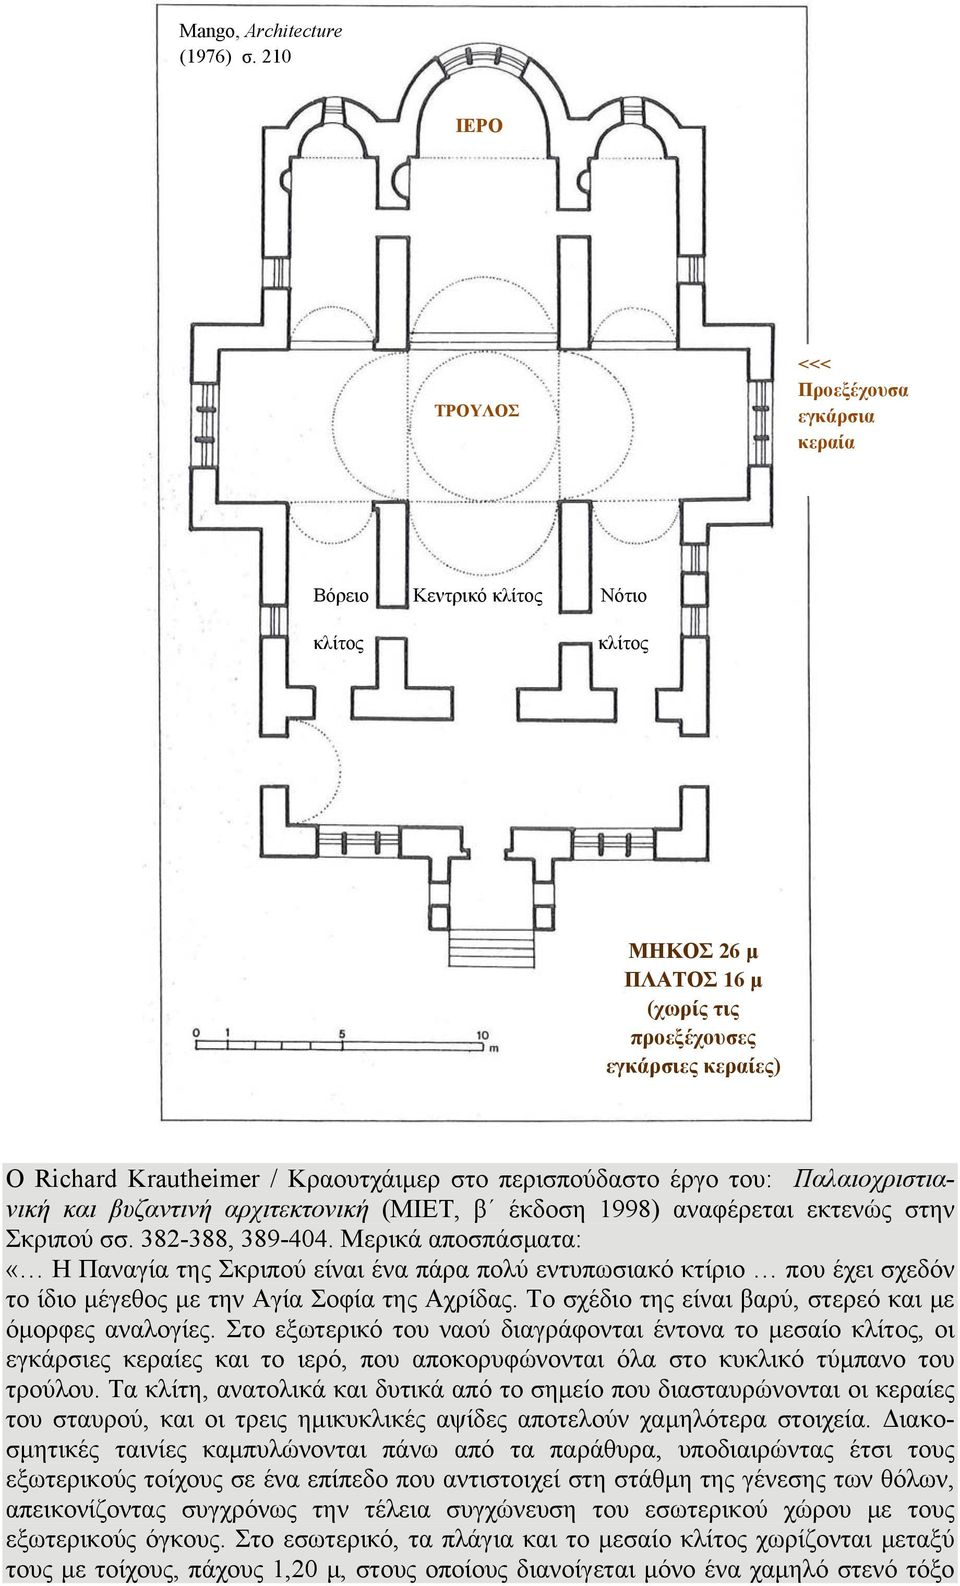 περισπούδαστο έργο του: Παλαιοχριστιανική και βυζαντινή αρχιτεκτονική (ΜΙΕΤ, β έκδοση 1998) αναφέρεται εκτενώς στην Σκριπού σσ. 382-388, 389-404.